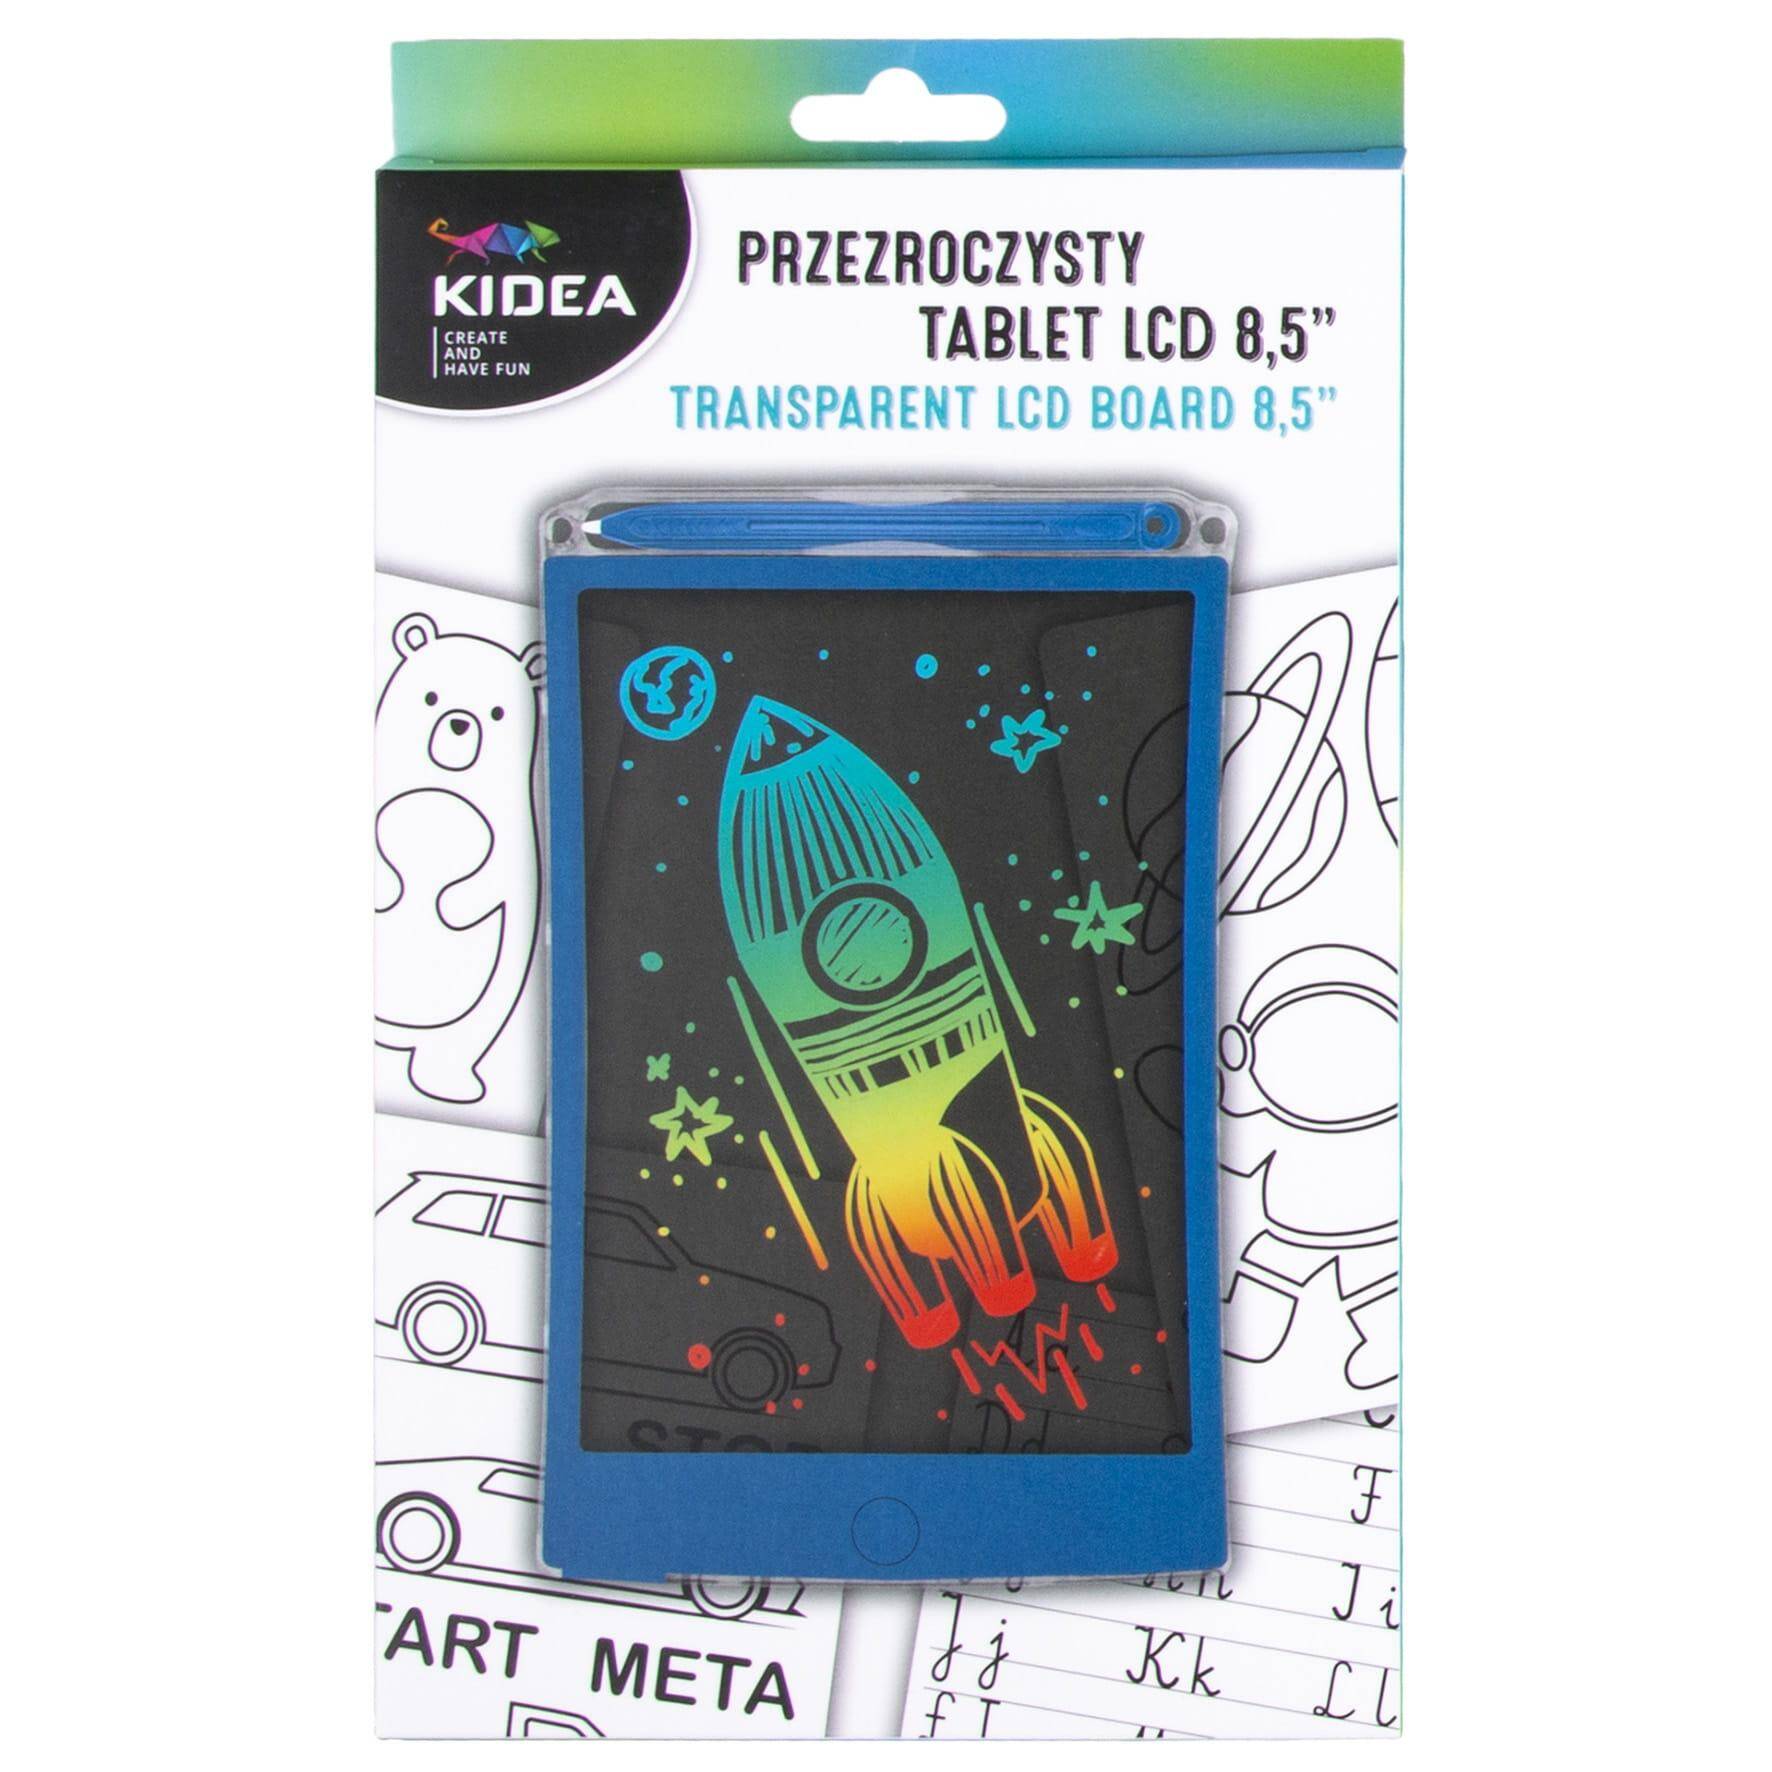 Przezroczysty tablet Kidea LCD B